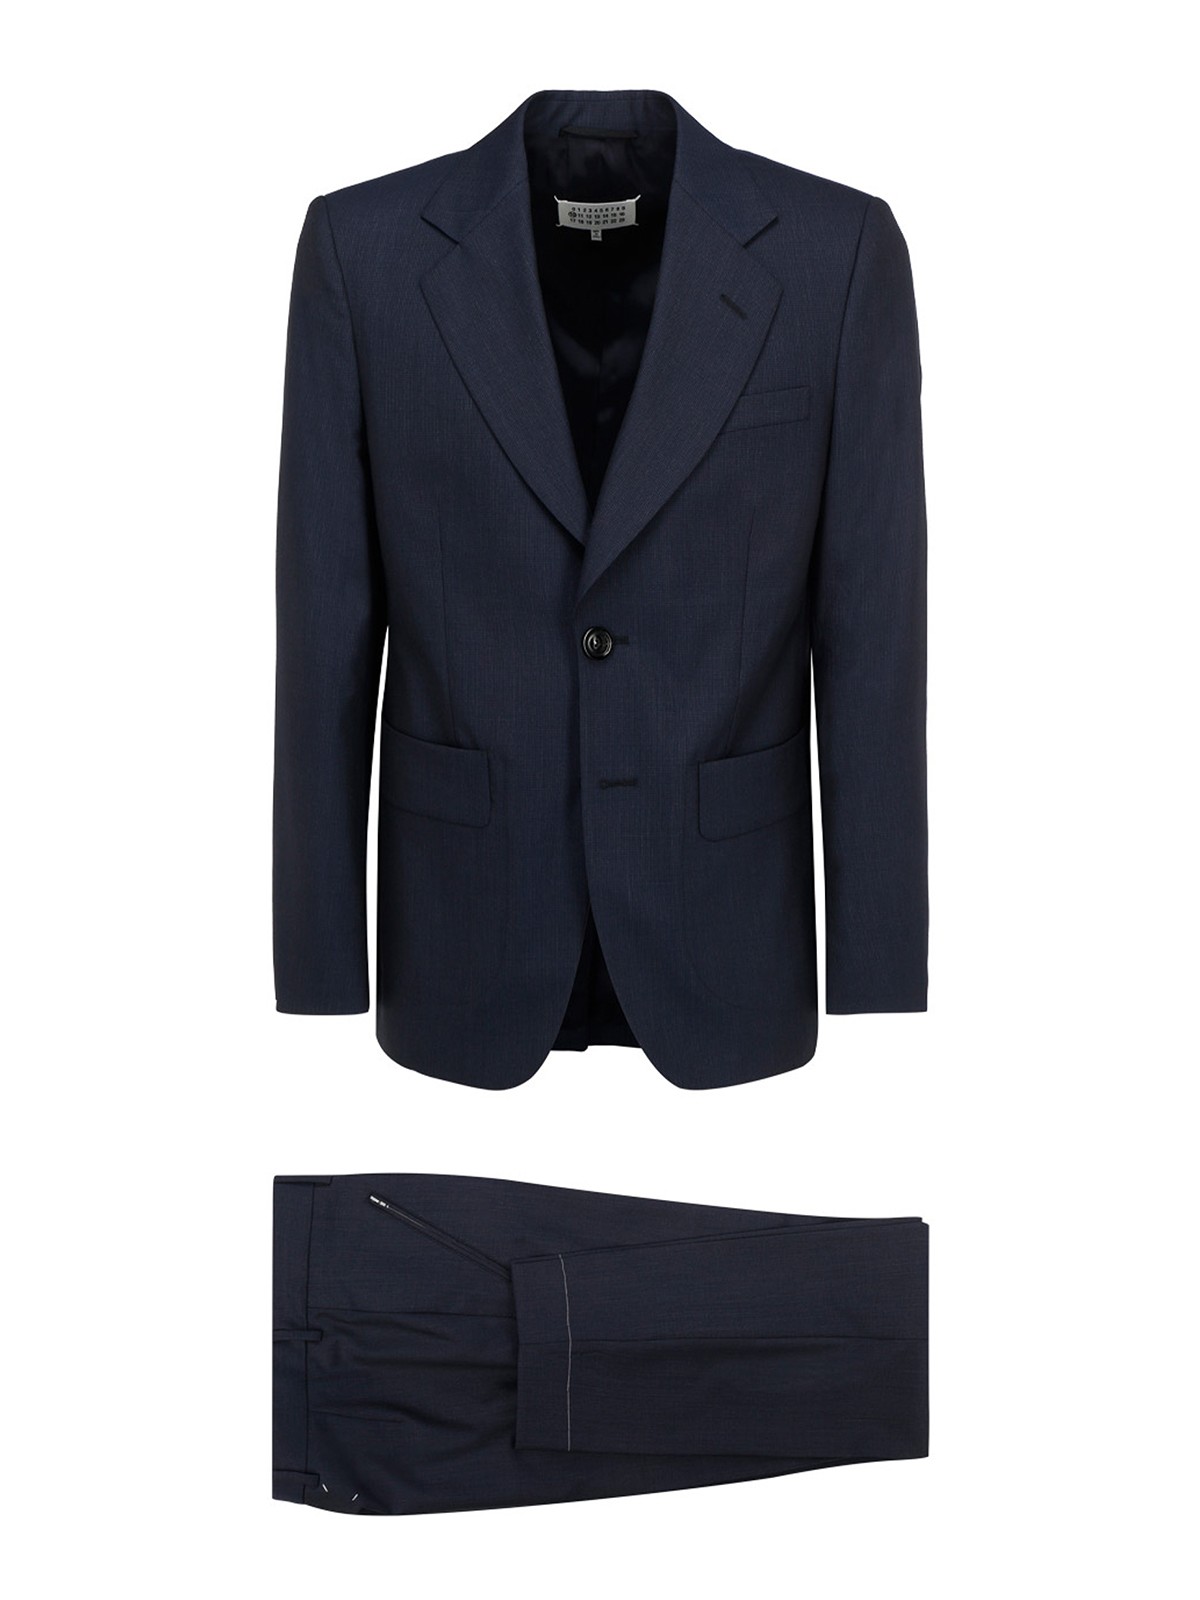 Formal suits Maison Margiela - Wool suit - S50FT0116S48995002F | iKRIX.com